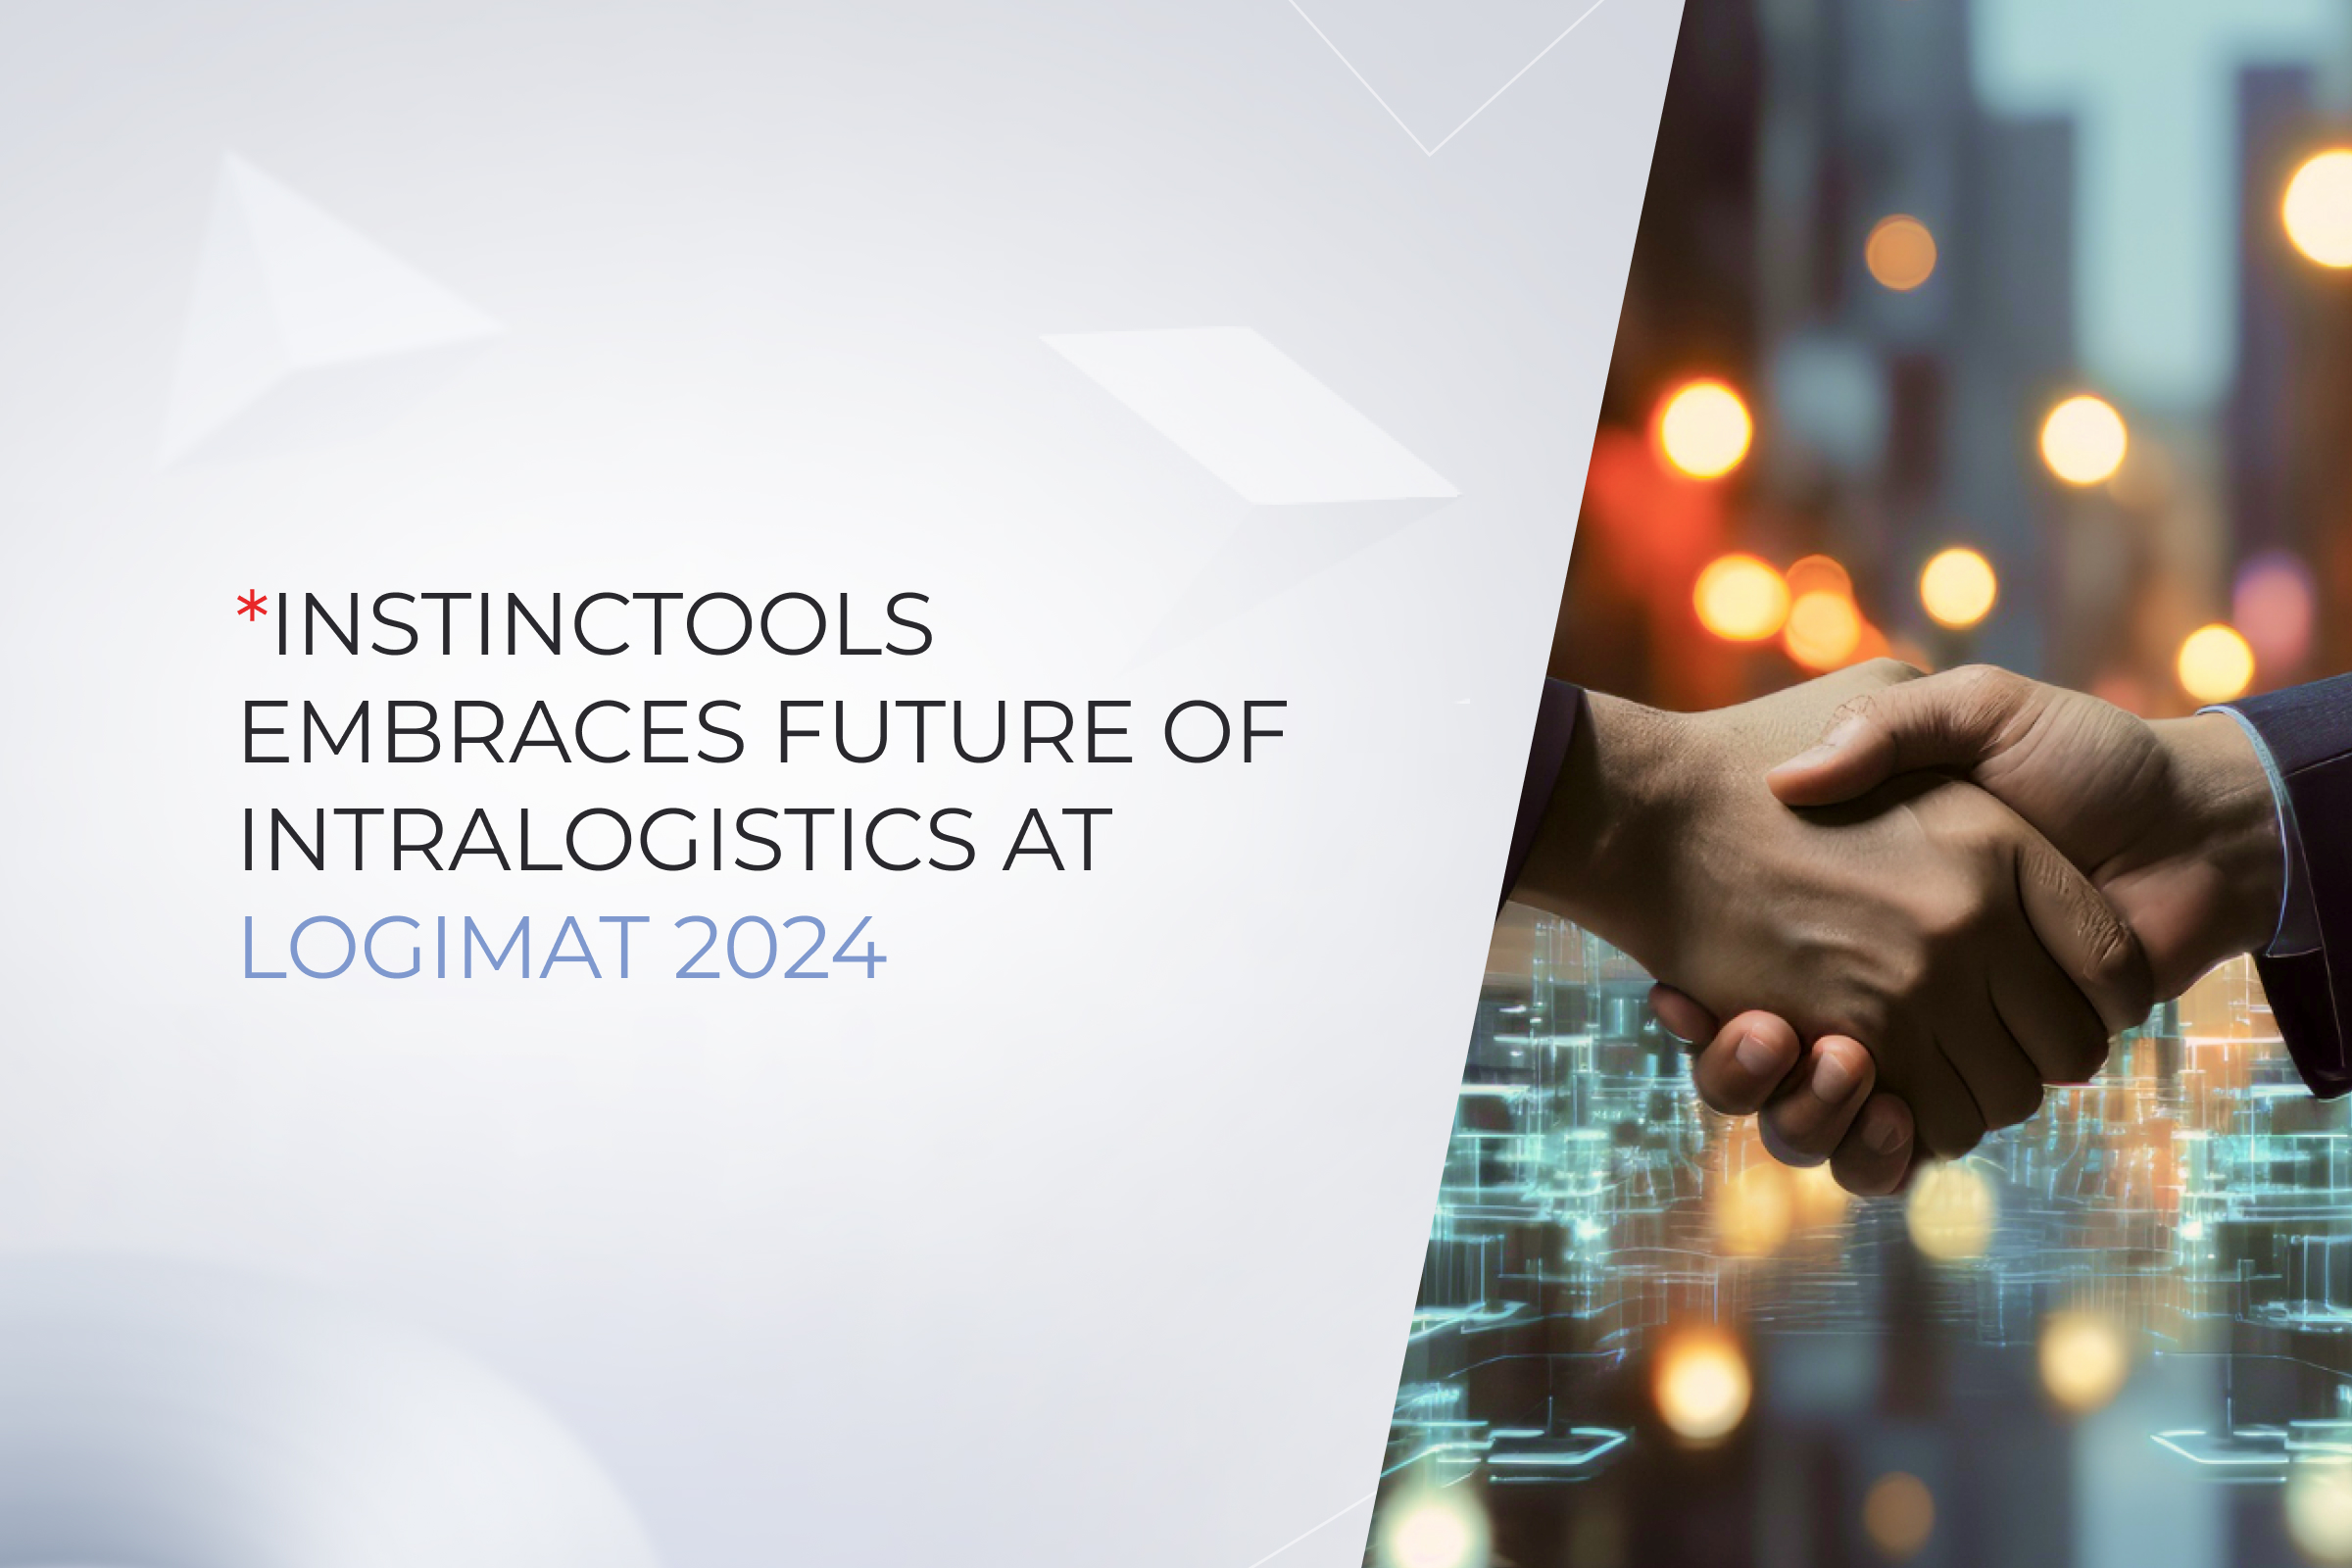 Instinctools Embraces Future of Intralogistics at LogiMAT 2024